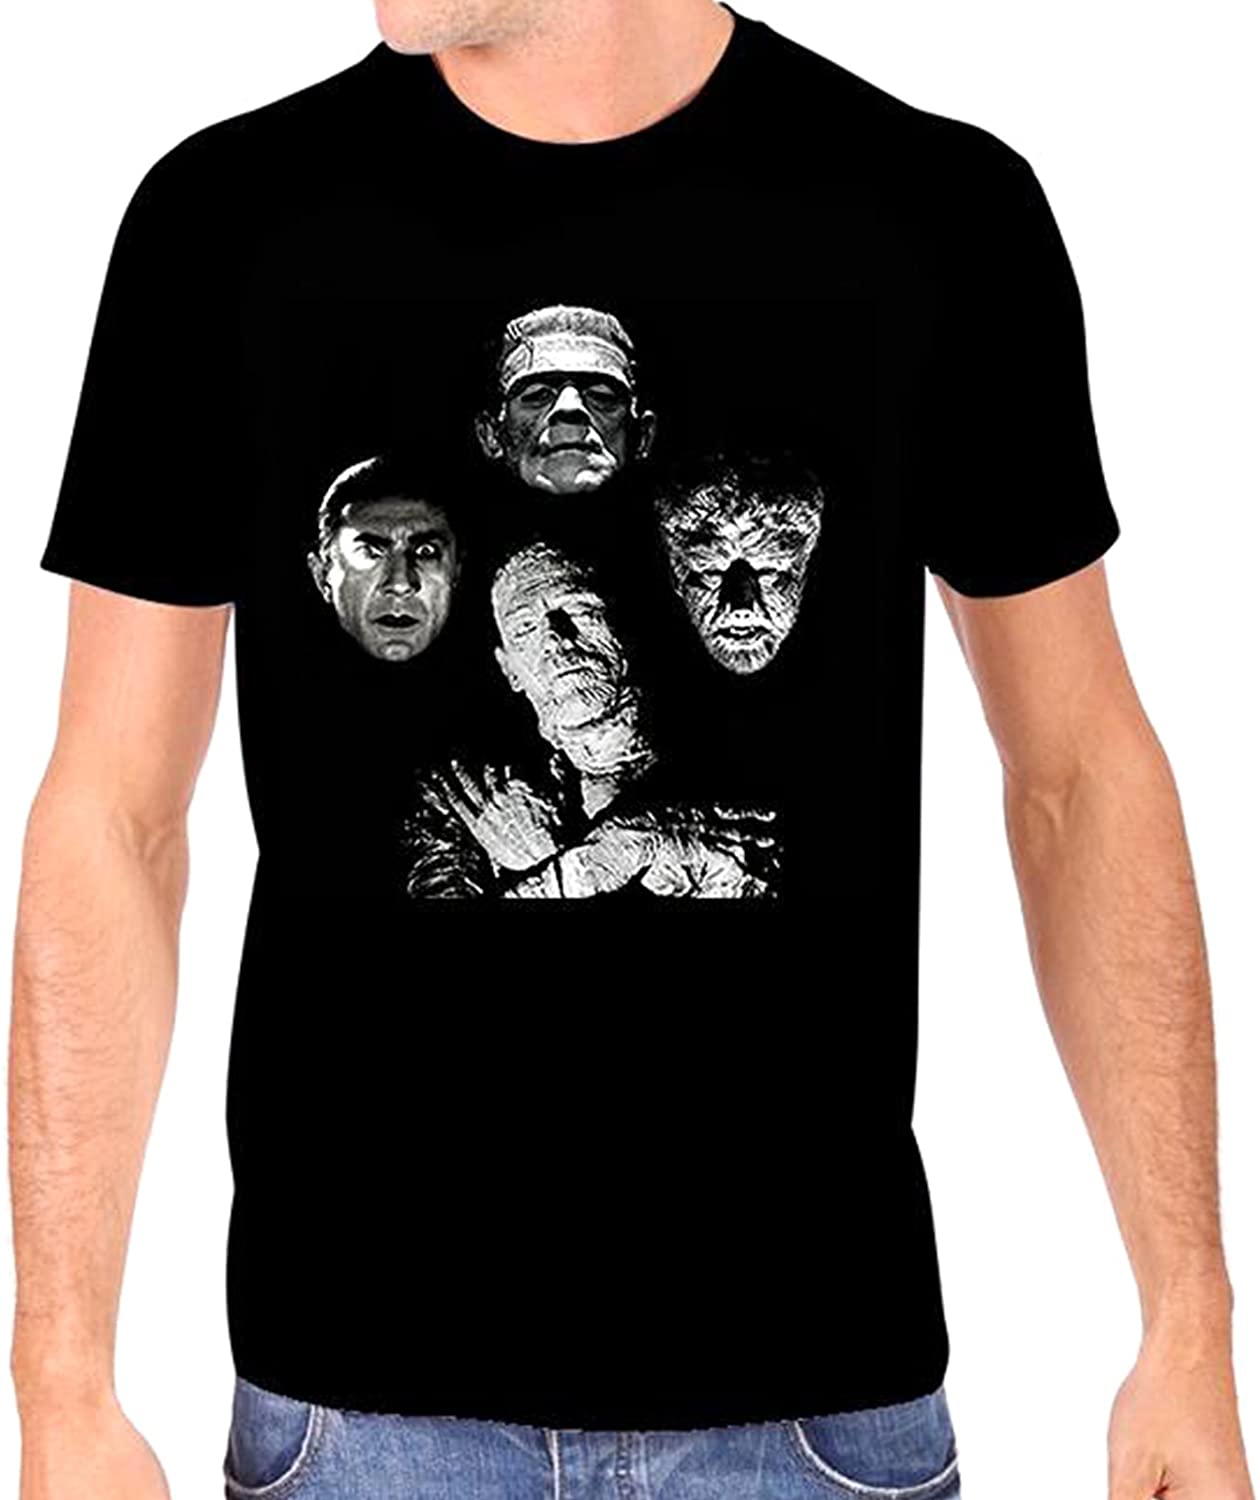 Universal Monsters Men's Horror Band T-Shirt, Black, Medium